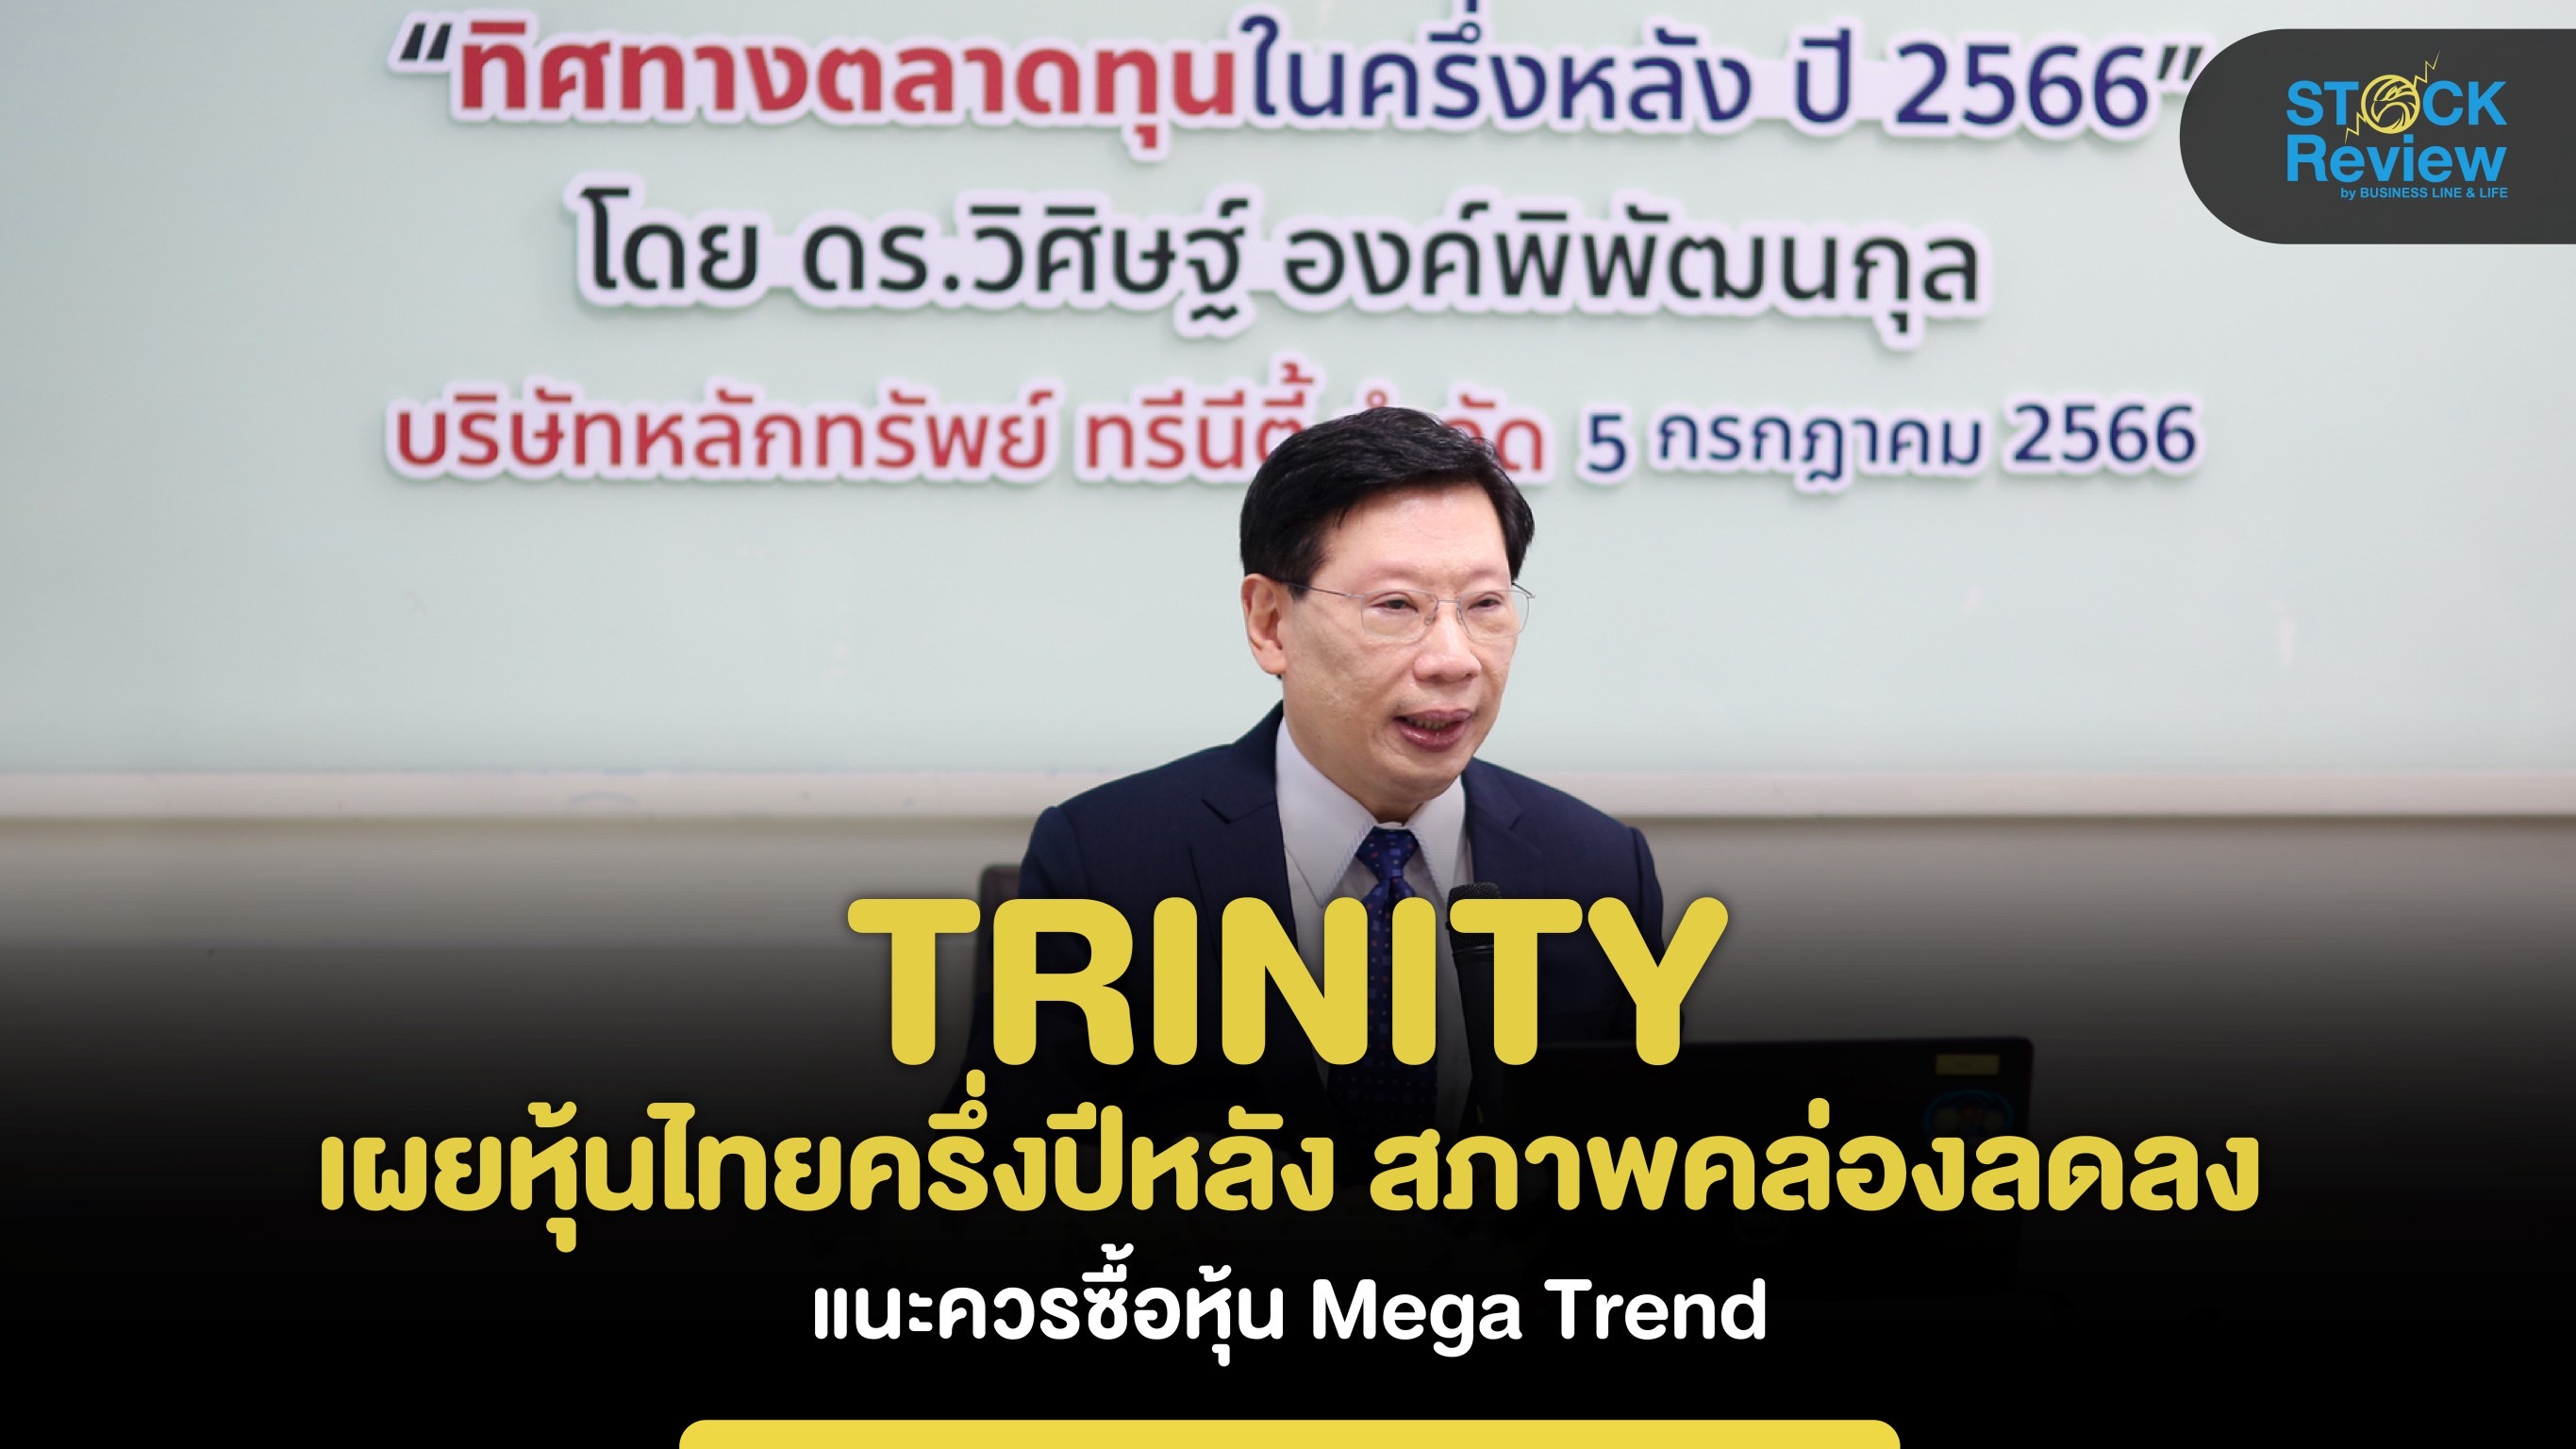 TRINITY เผยหุ้นไทยครึ่งปีหลังสภาพคล่องลดลง แนะเก็บหุ้น Mega Trend